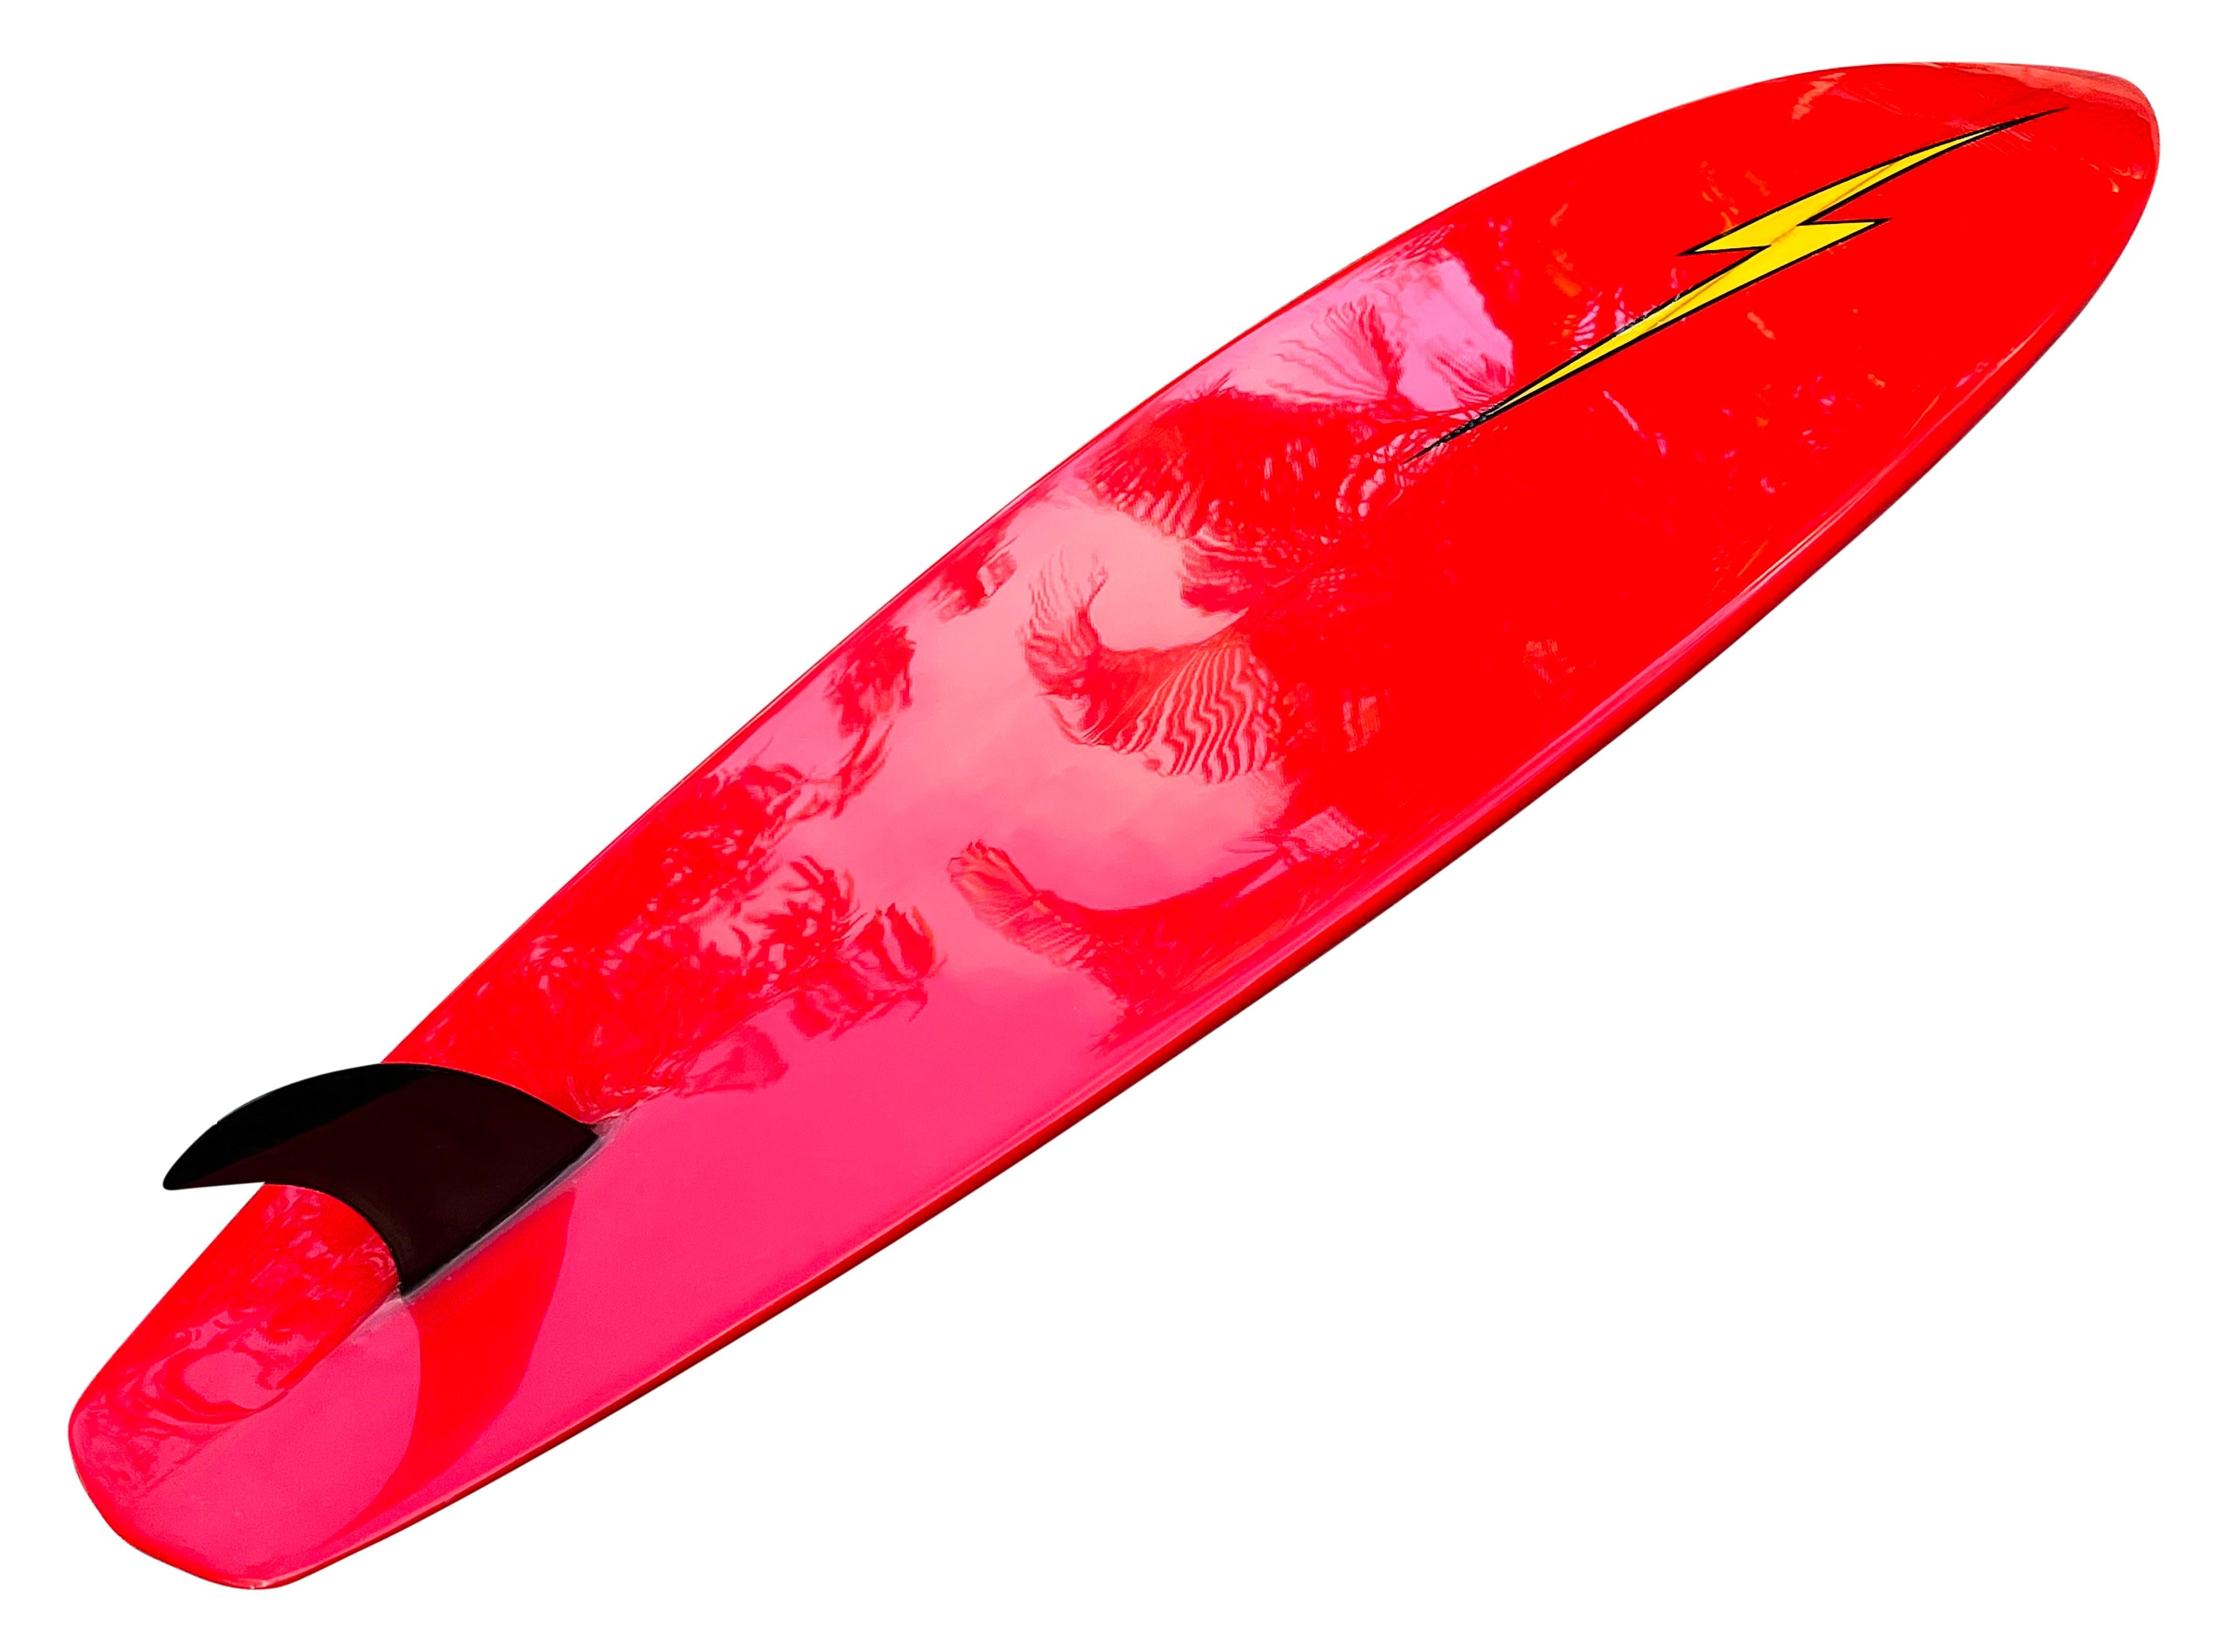 1970er Vintage Lightning Bolt Surfbrett von Gerry Lopez. Mit prächtigen roten und gelben Blitzen mit schwarzem Umriss. Rautenförmiges Schwanzdesign mit aufgesetzter Flosse. Handgefertigt vom meistverehrten Surfer/Boardbuilder der Welt, Gerry Lopez.